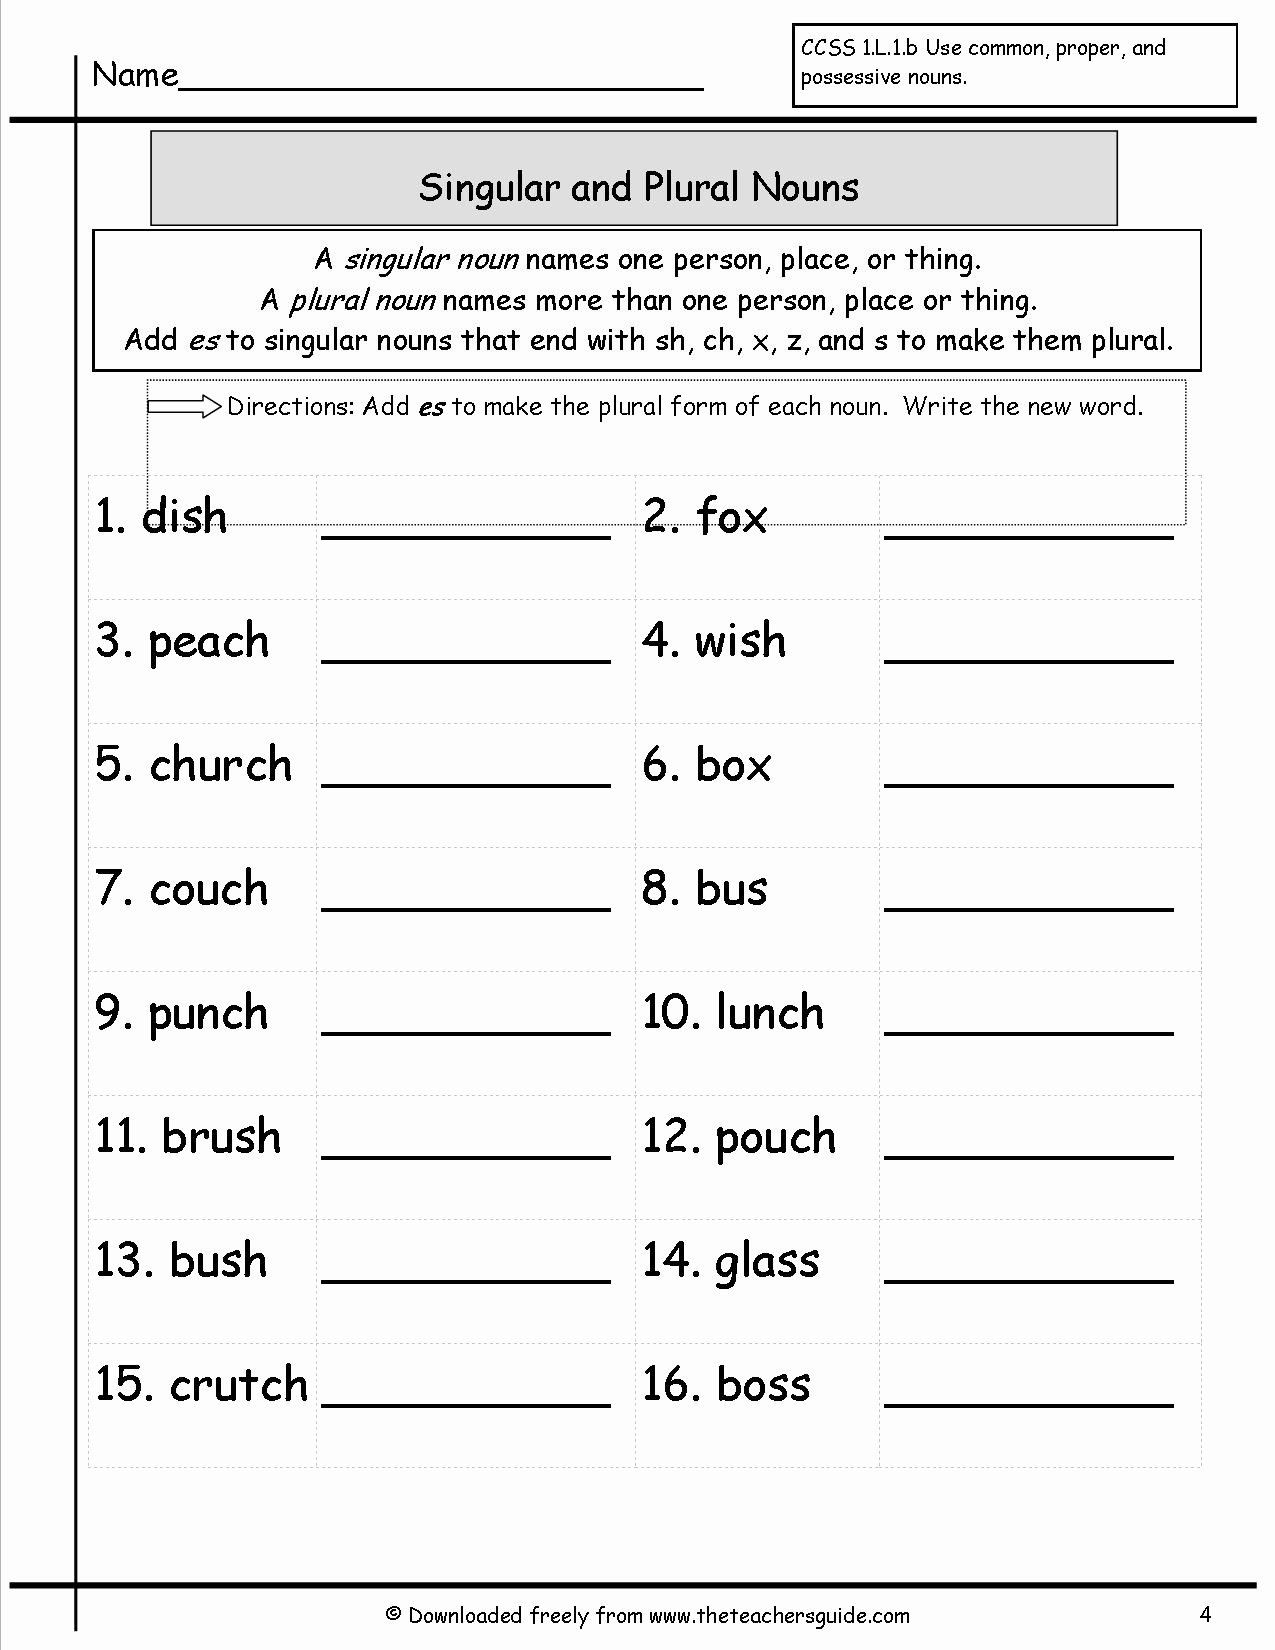 Singular and Plural Nouns Worksheet Inspirational Singular and Plural Nouns Worksheets From the Teacher S Guide